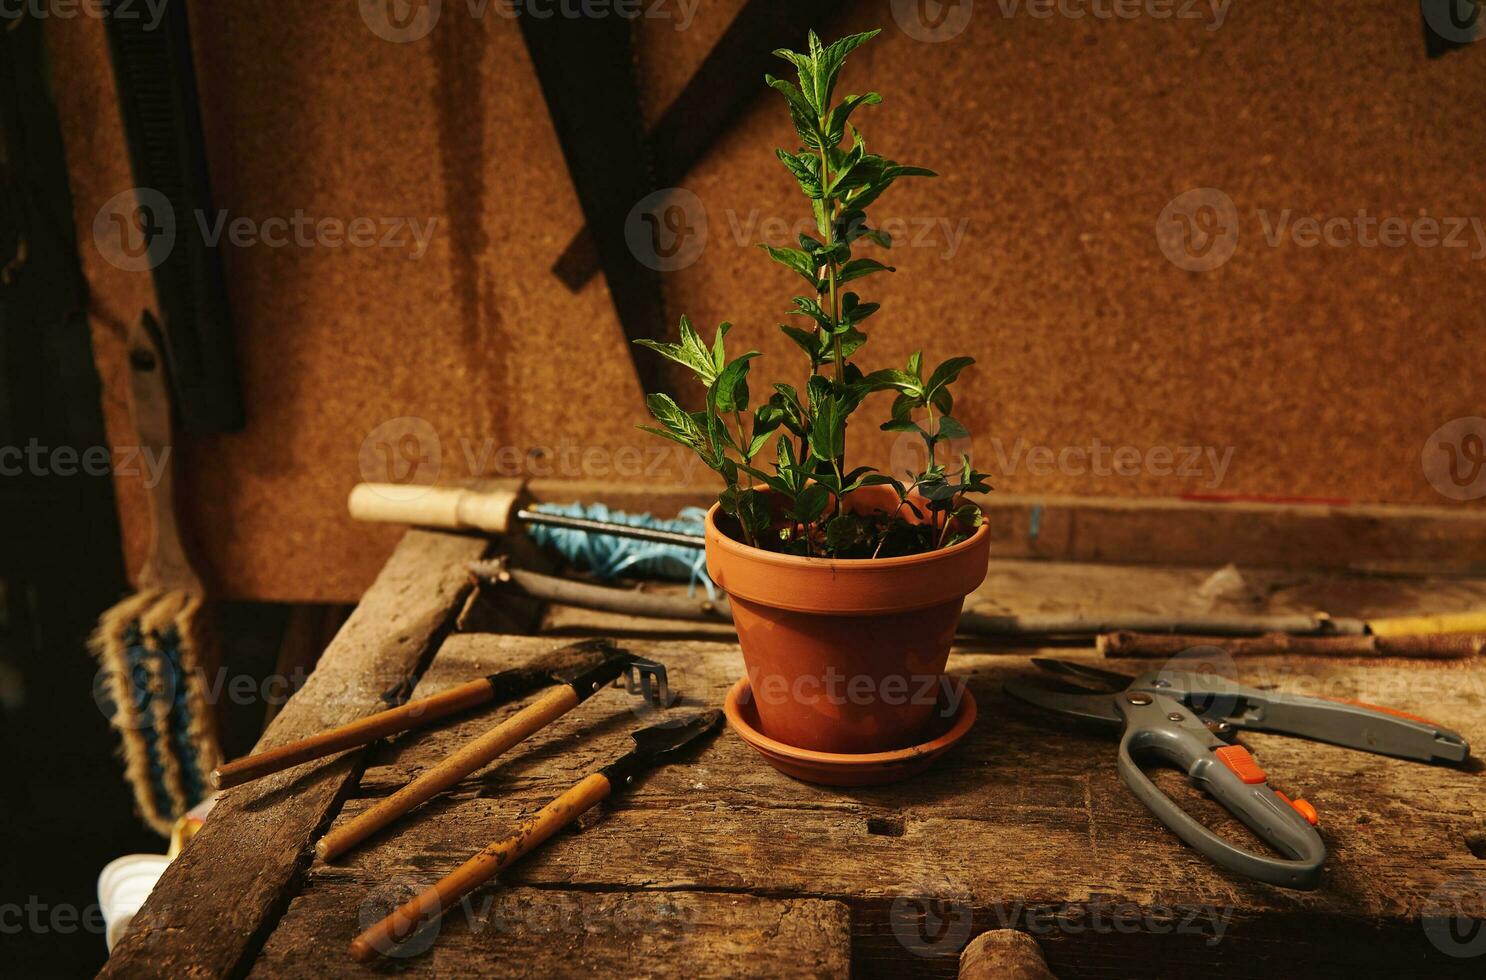 encore la vie de jardinage outils et jardin cisailles mensonge suivant à une argile pot avec planté menthe feuilles sur une en bois table dans une campagne en bois belvédère photo